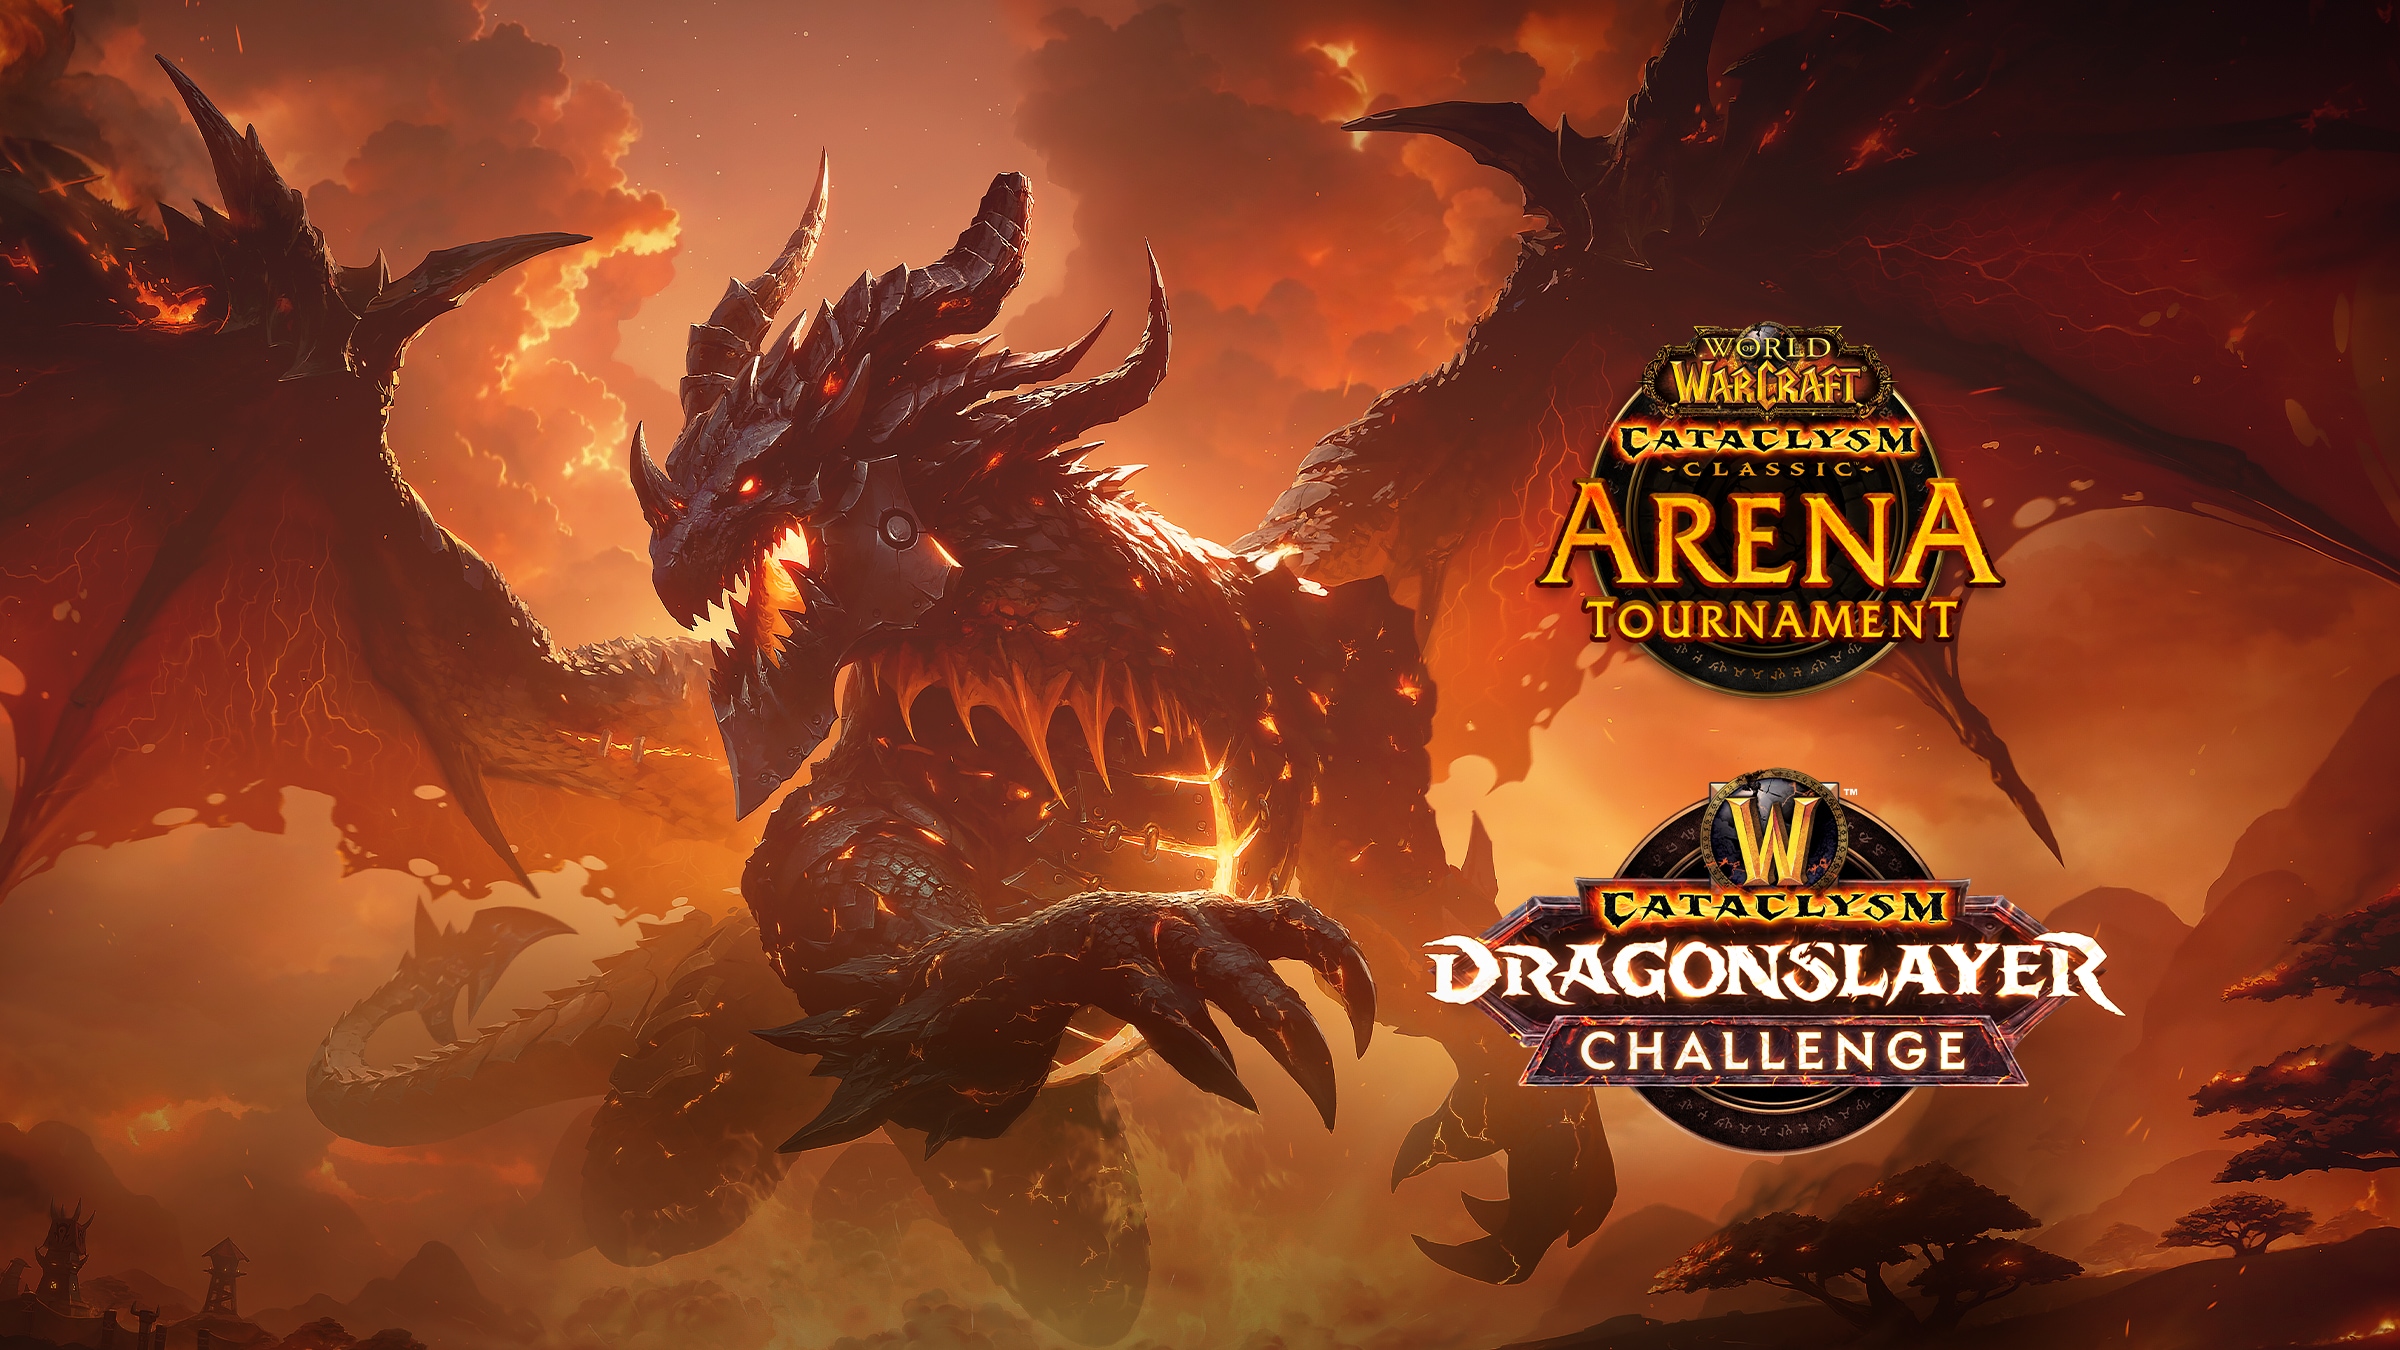 O Desafio Mata-dragões e o Cataclysm Arena Tournament chegaram!